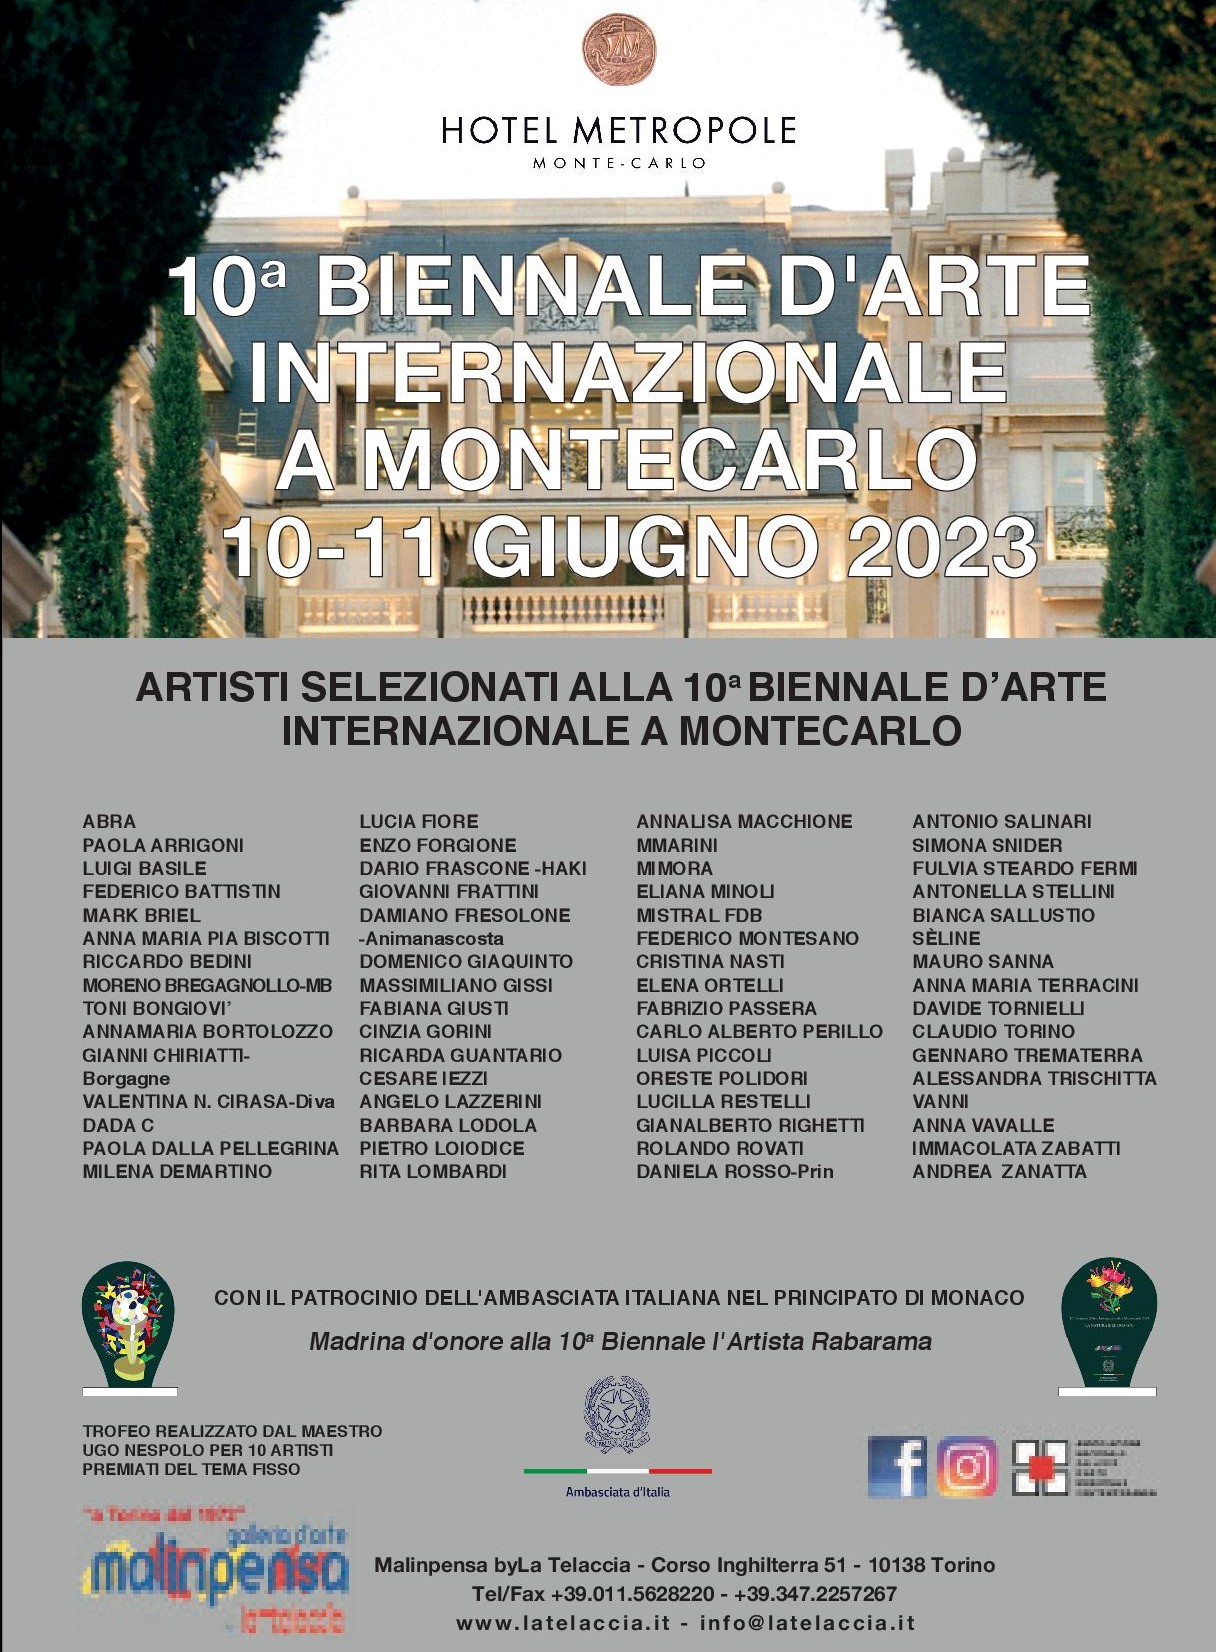 ARTISTI SELEZIONATI ALLA 10° BIENNALE D'ARTE INTERNAZIONALE A MONTECARLO 2023